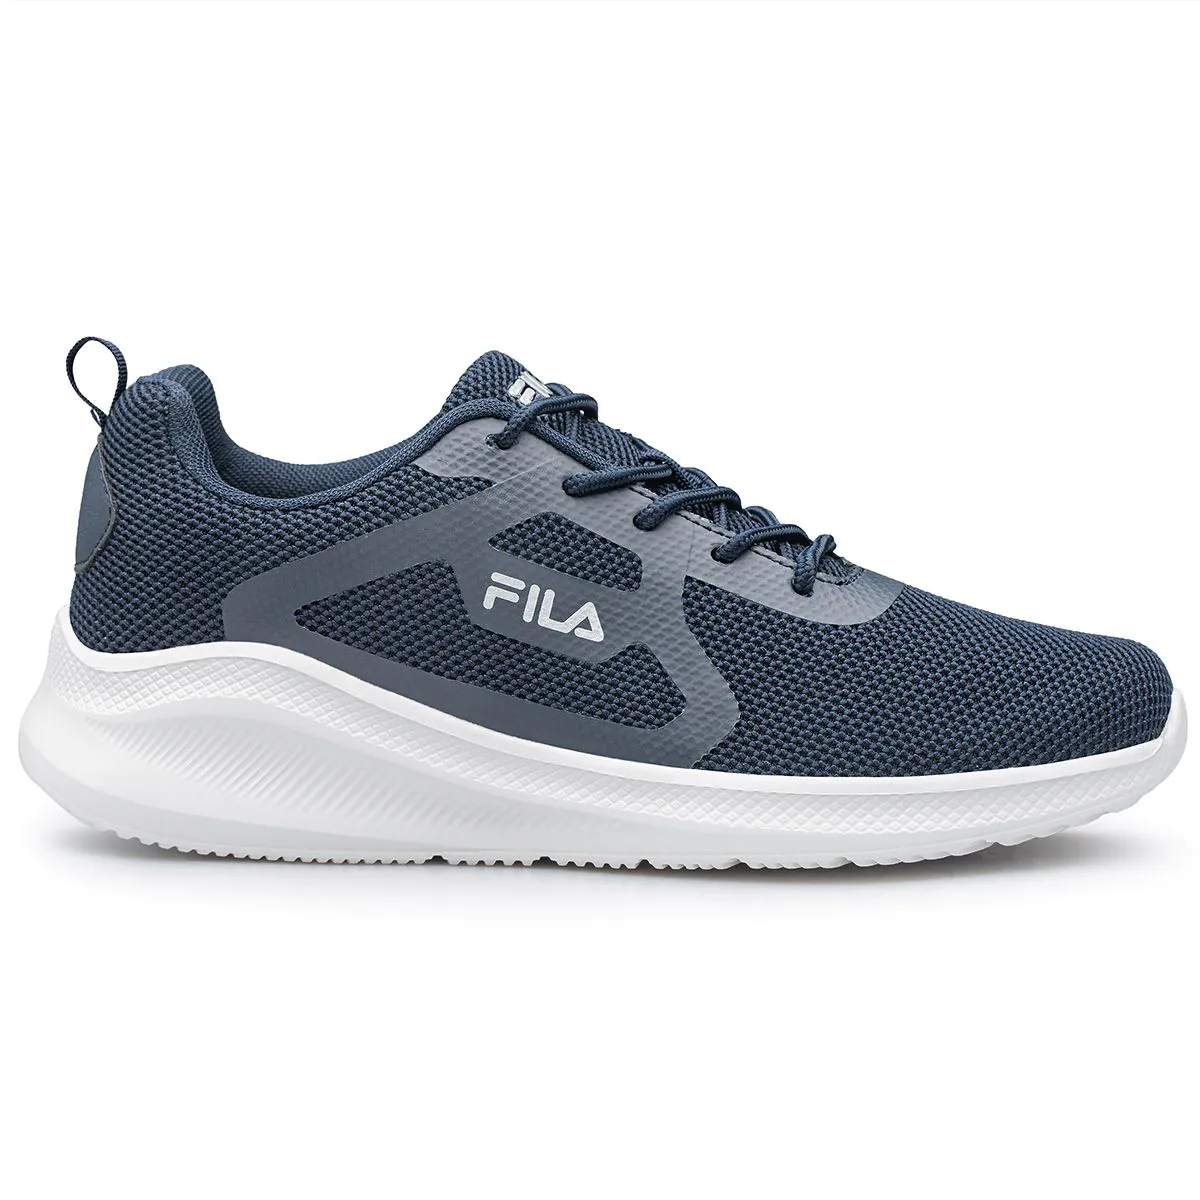 Fila Cassia 2 Men's Running Shoes 1AF23025-231